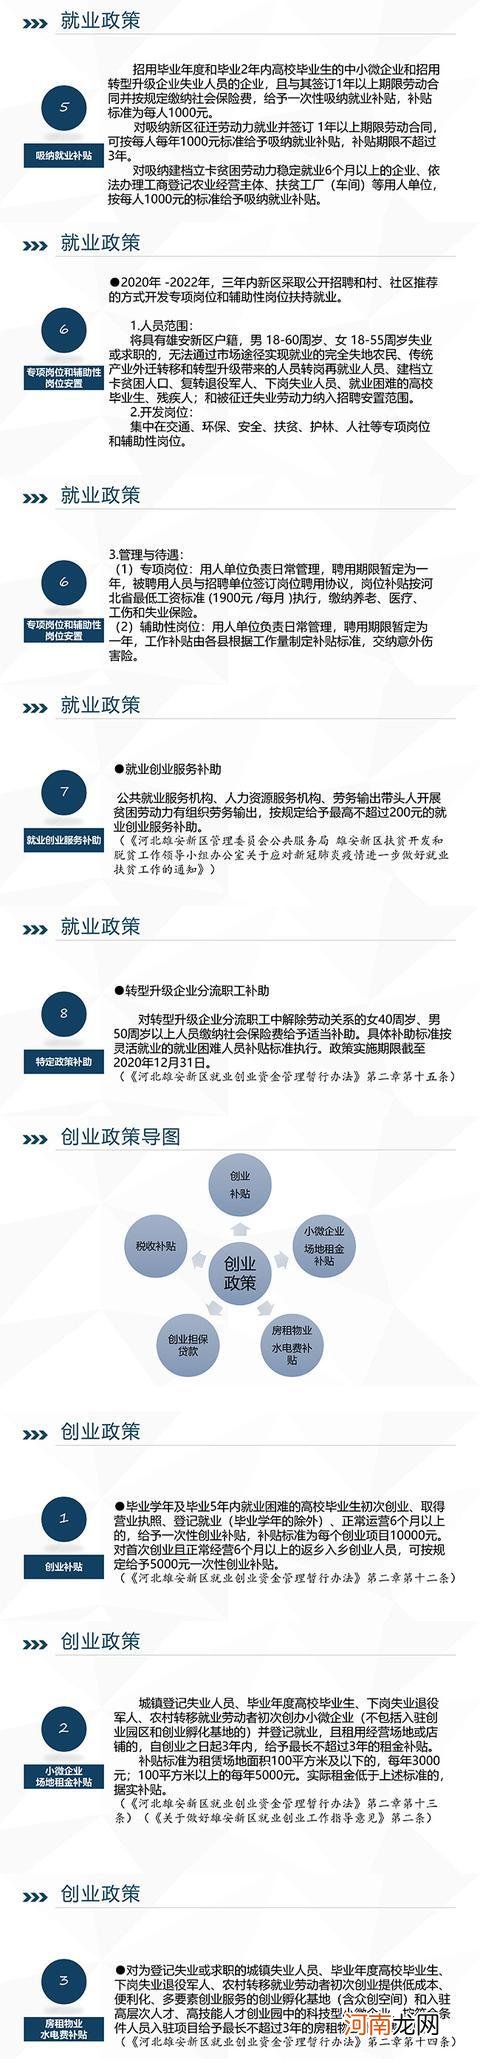 广州新创业扶持政策 广州有没有创业扶持的